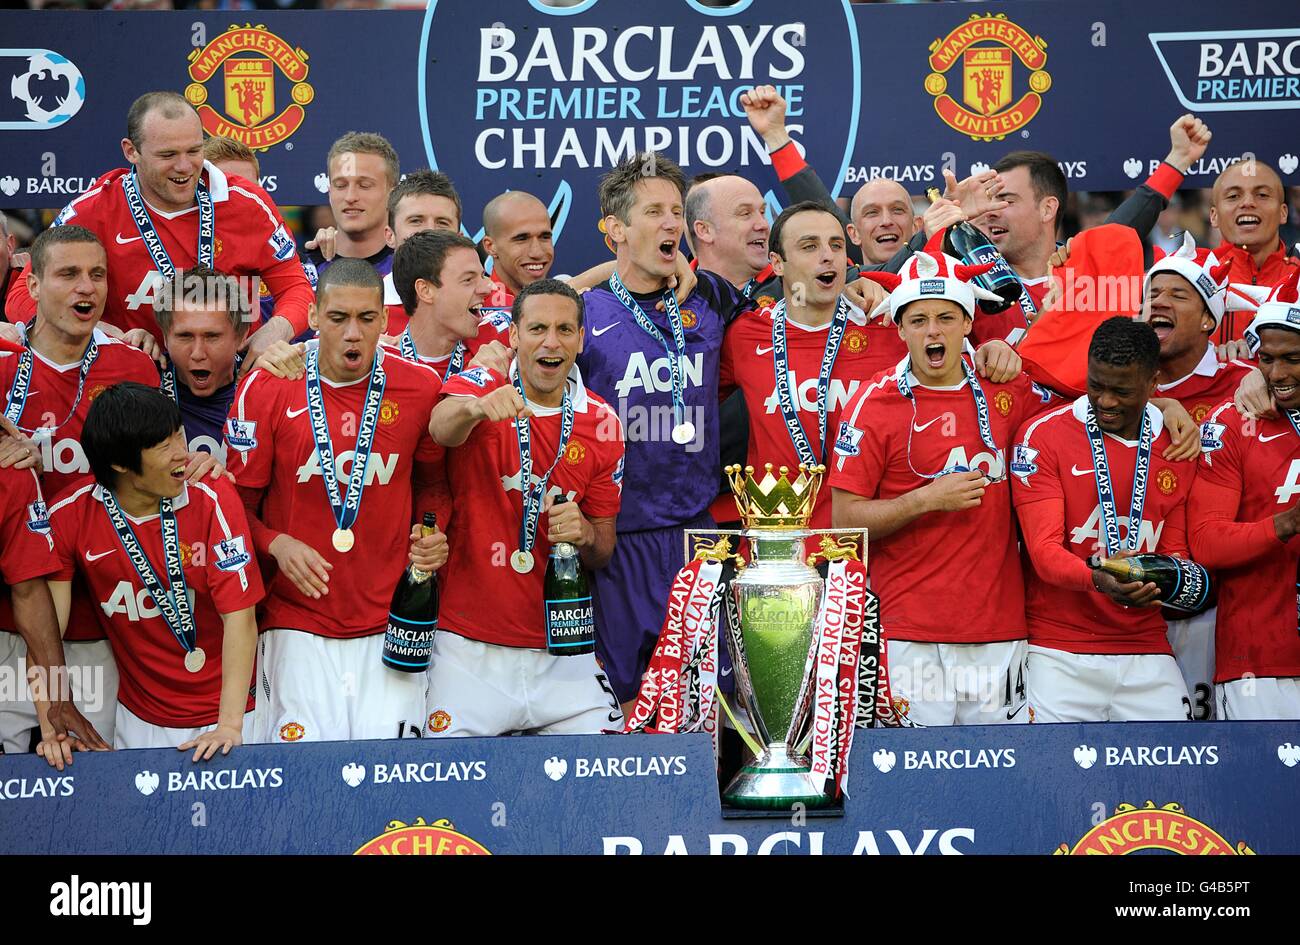 Football - Barclays Premier League - Manchester United / Blackpool - Old Trafford.Les joueurs de Manchester United célèbrent avec le trophée Barclays Premier League Banque D'Images